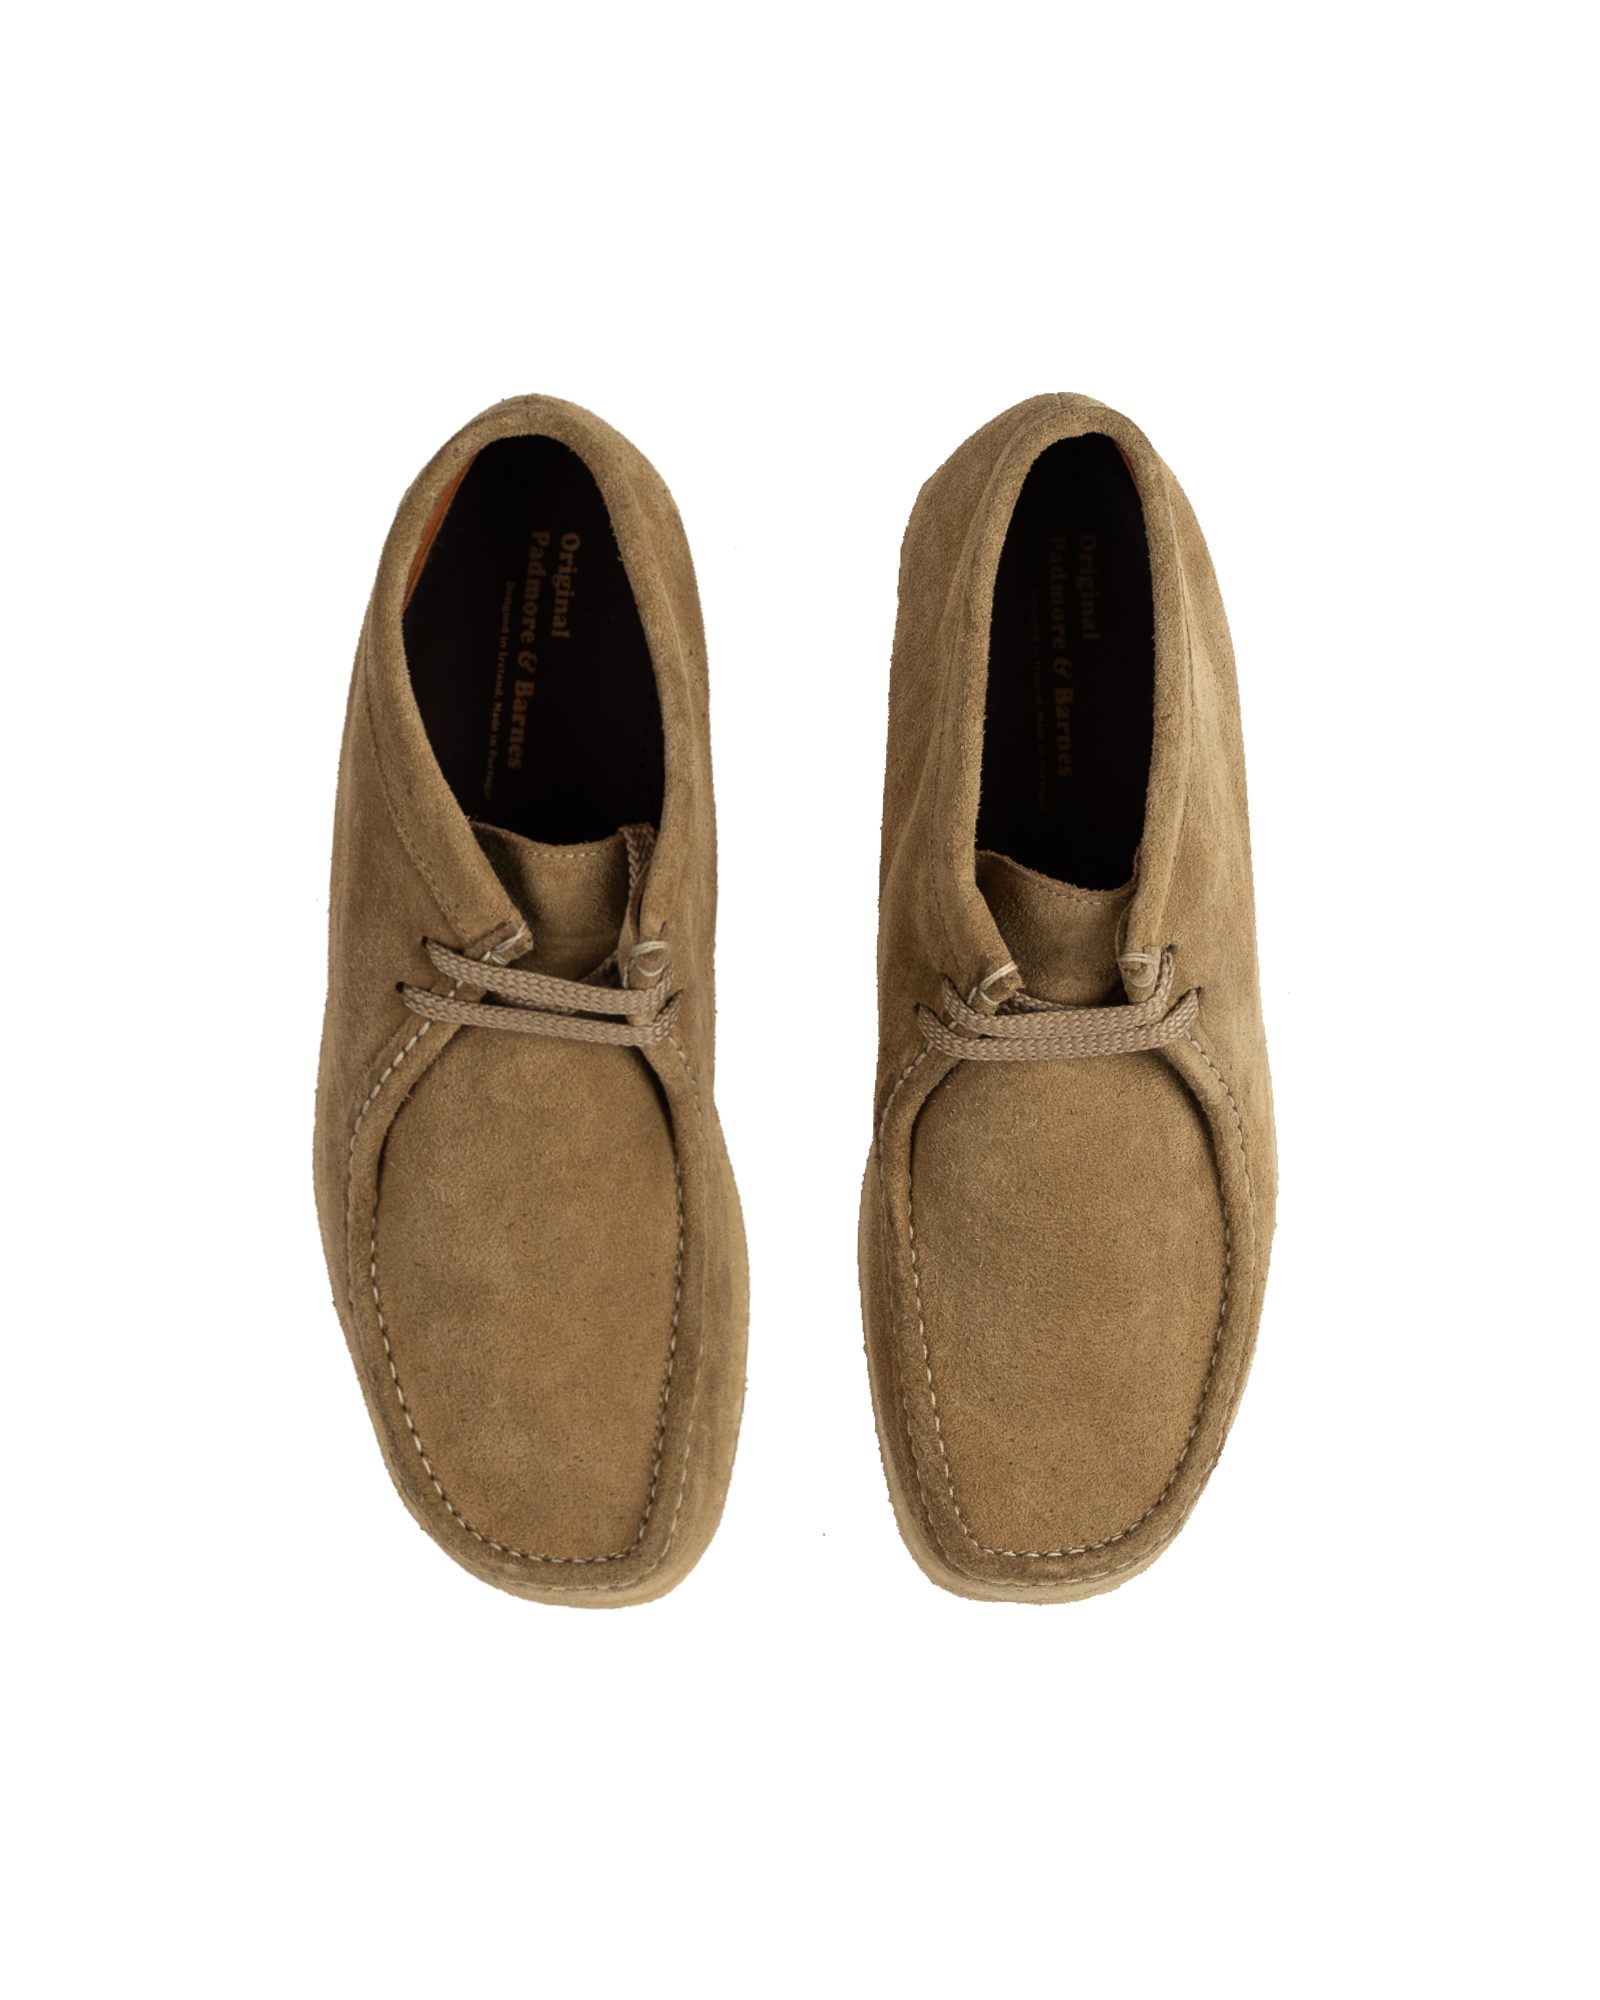 Padmore & Barnes - Footwear - P404 - Terra Suede